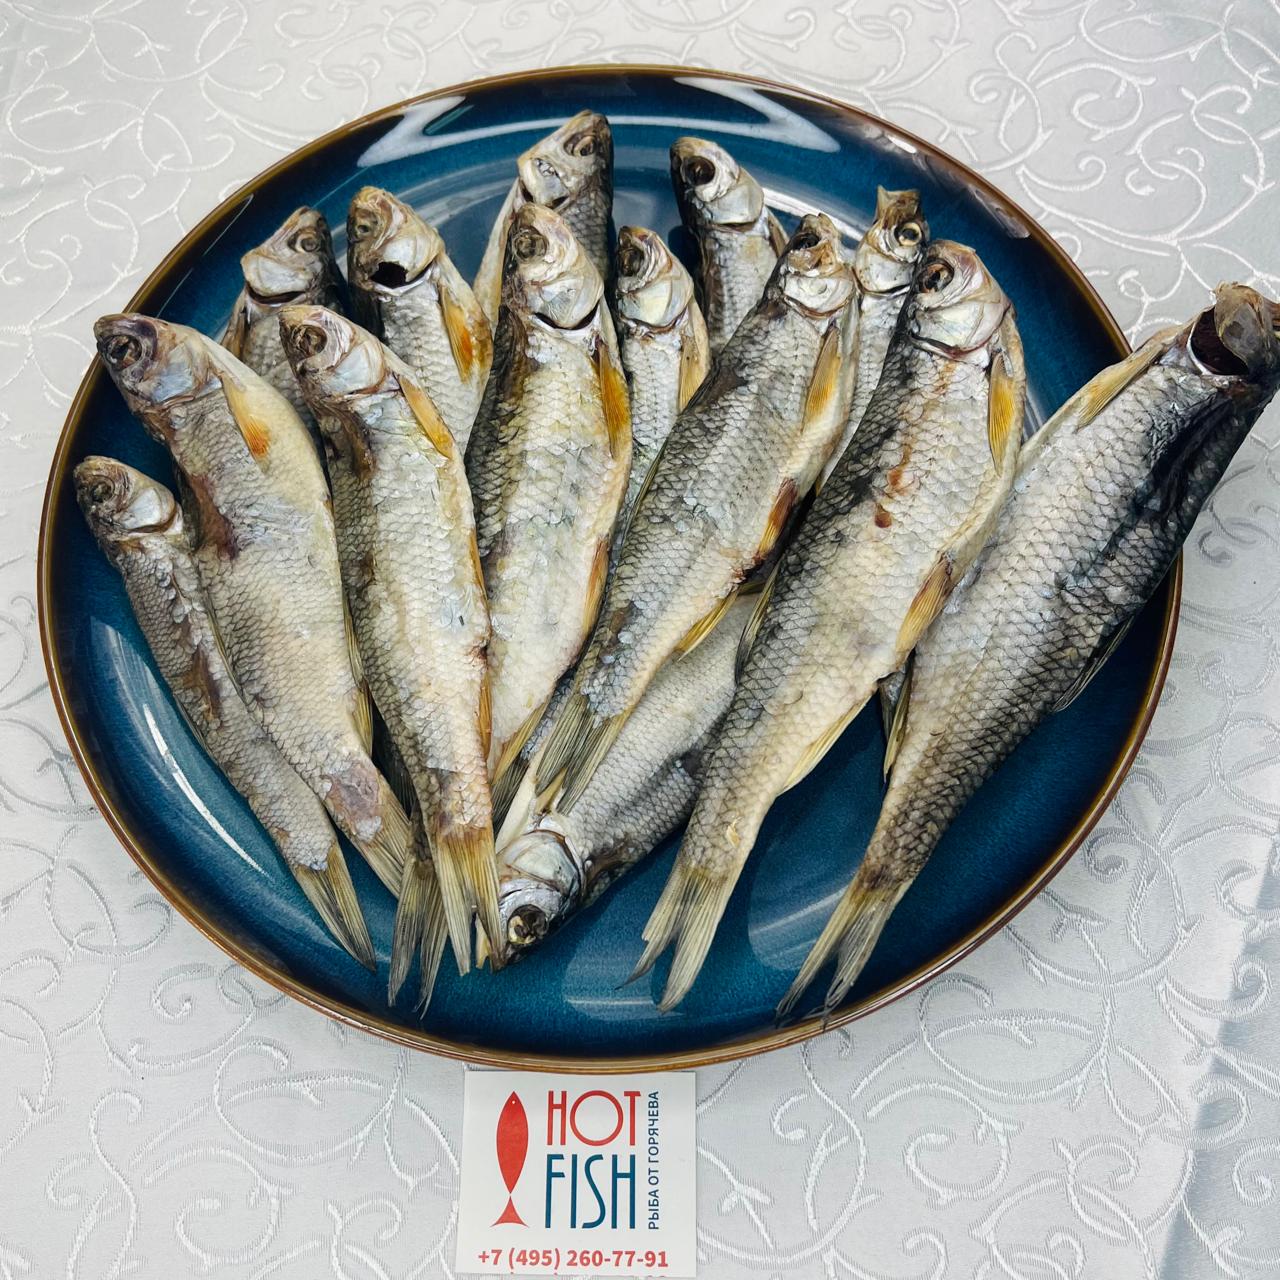 Широкий ассортимент рыбы и морепродуктов от «Hot Fish. Рыба от Горячева» с  доставкой на дом по Москве и Области.